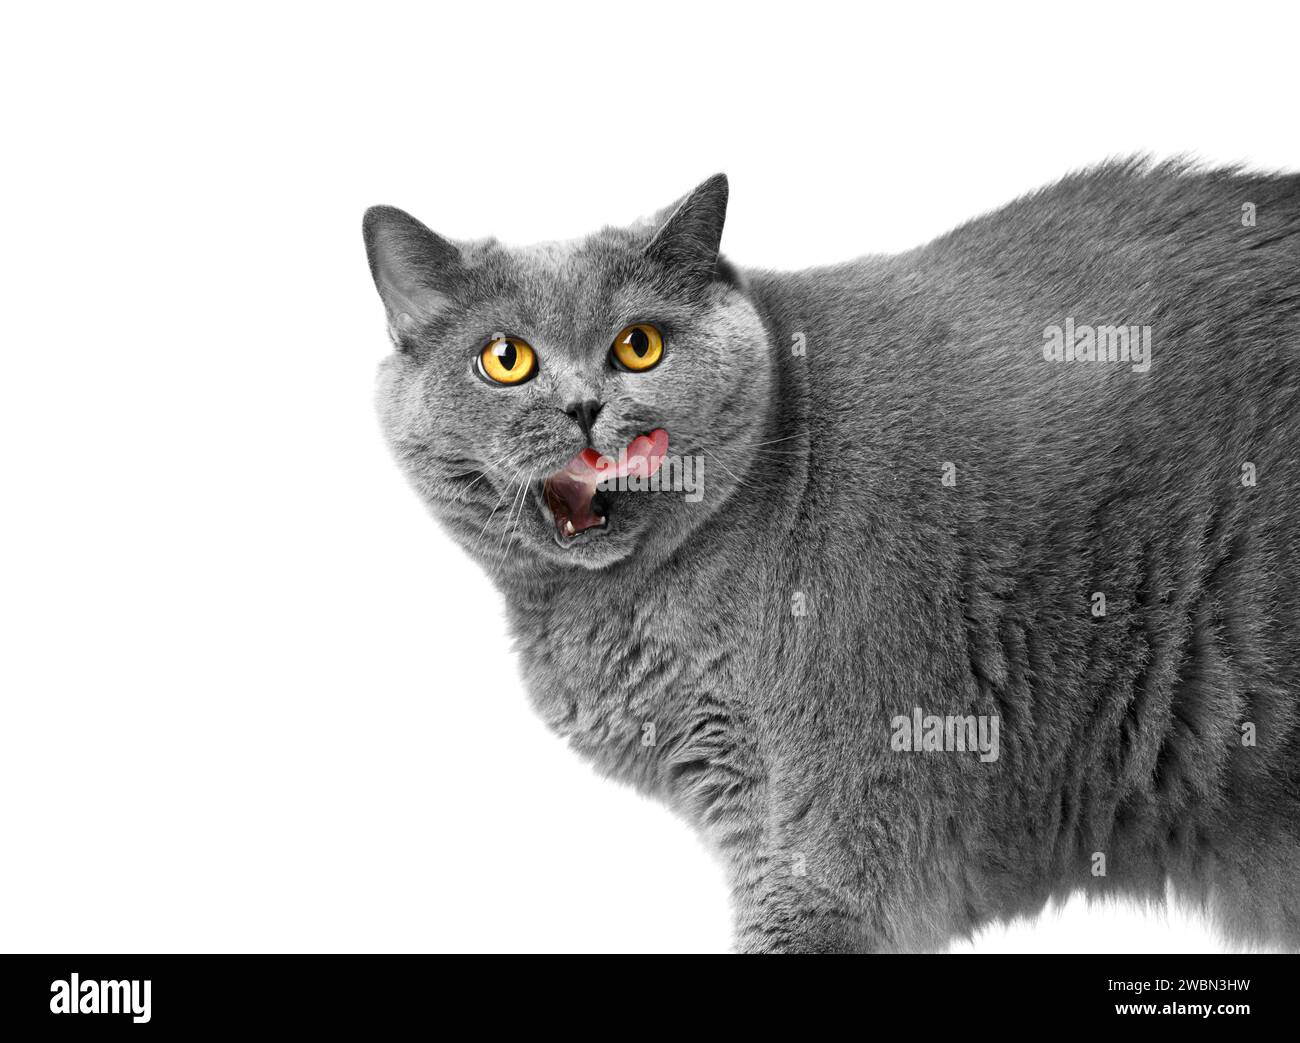 Gros chat britannique gris lèche après avoir mangé, isolé sur blanc, espace de copie. Obésité, régime alimentaire, perte de poids d'un chat écossais, publicité de nourriture pour surpeser Banque D'Images